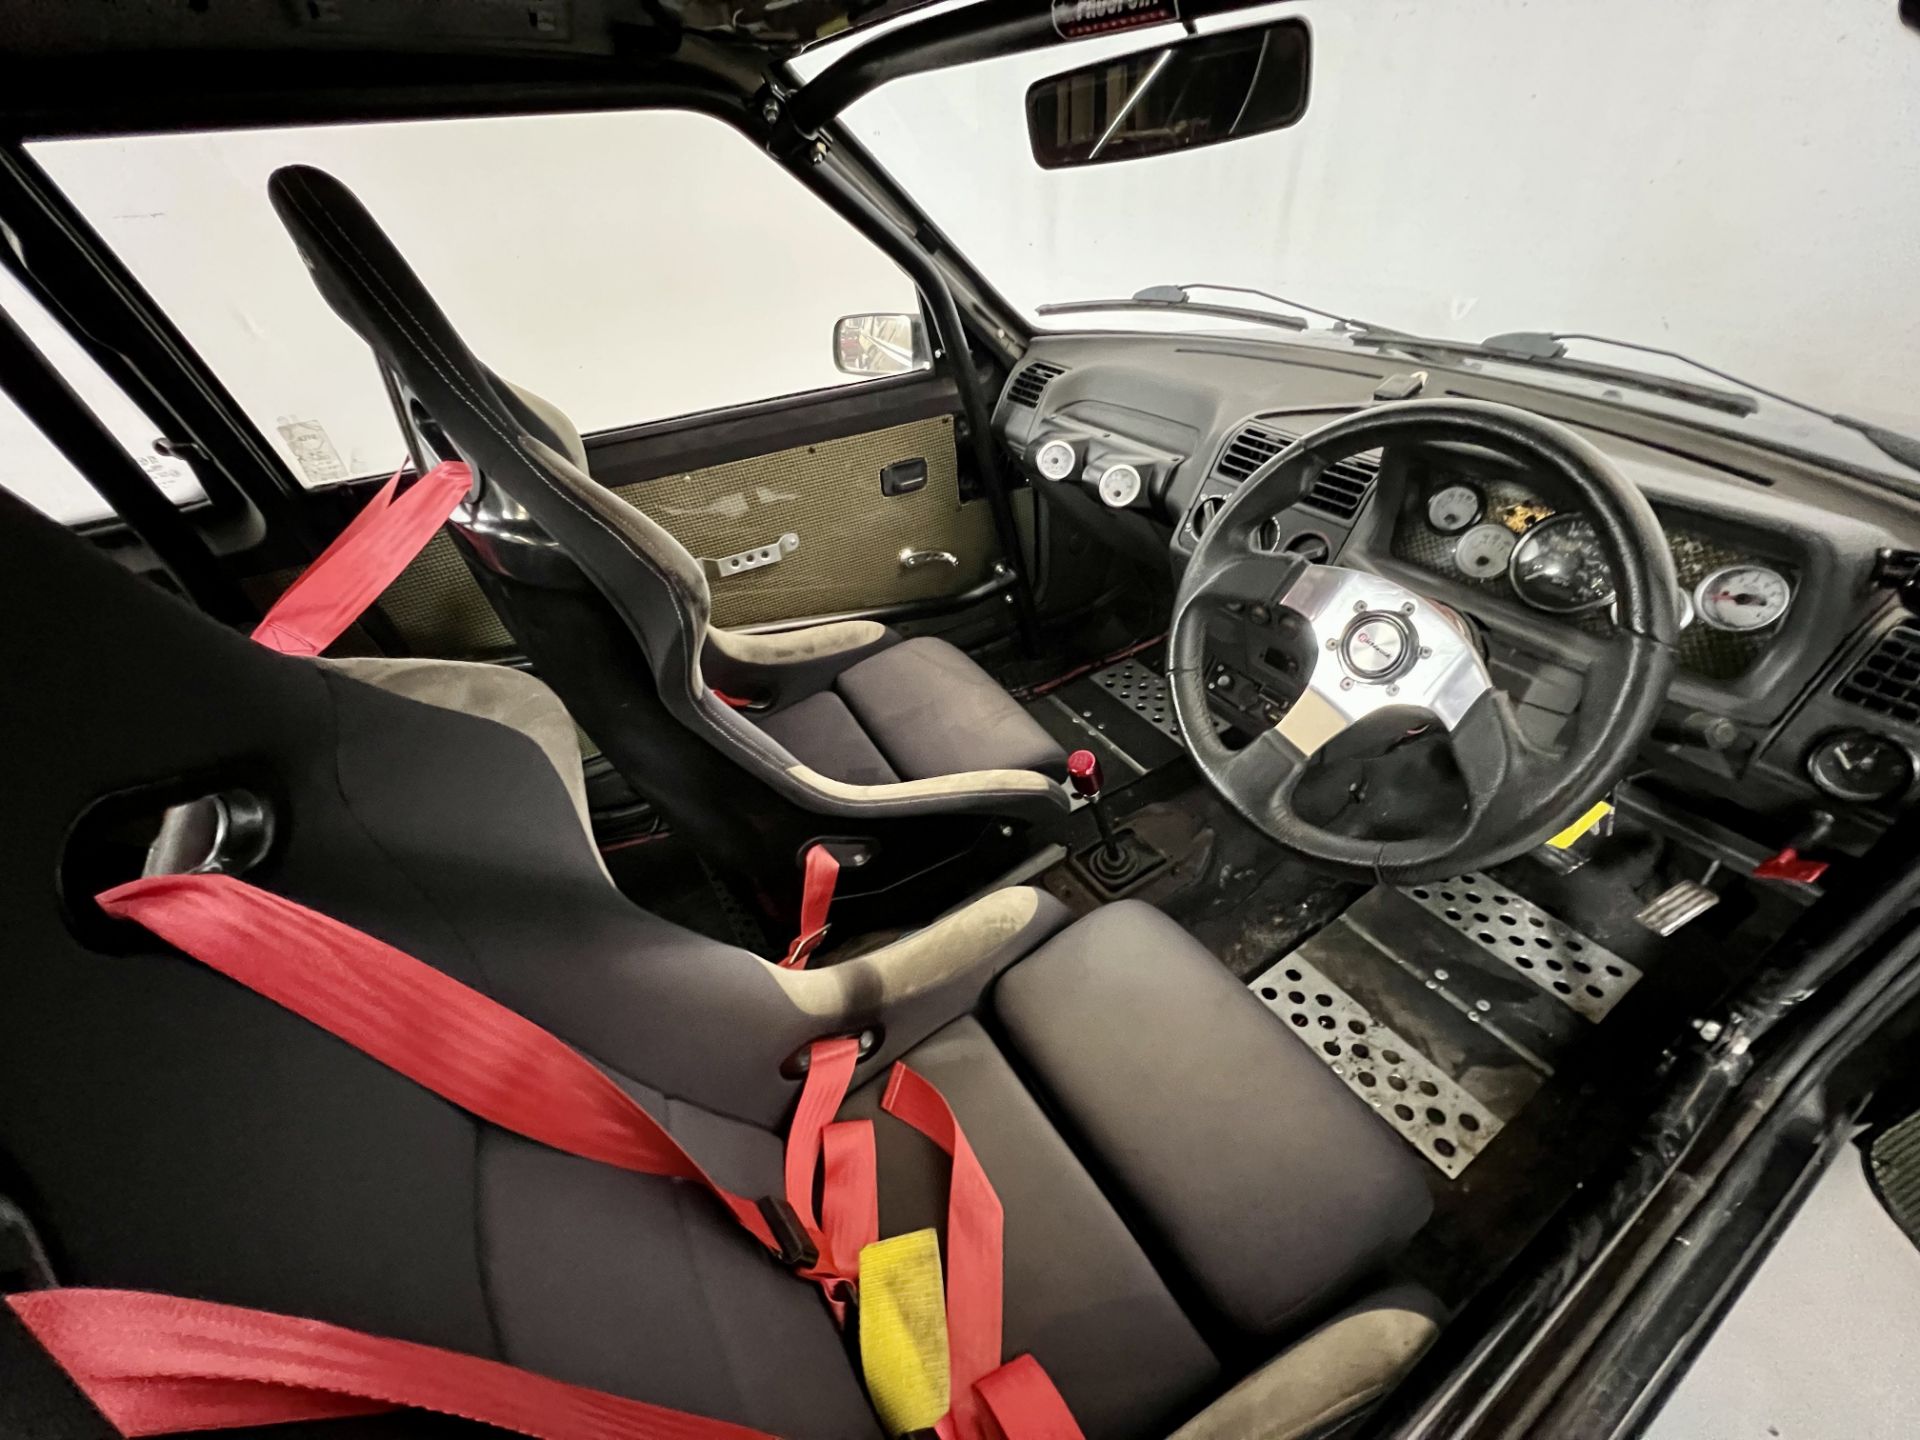 Peugeot 205 GTI Turbo - Image 19 of 26